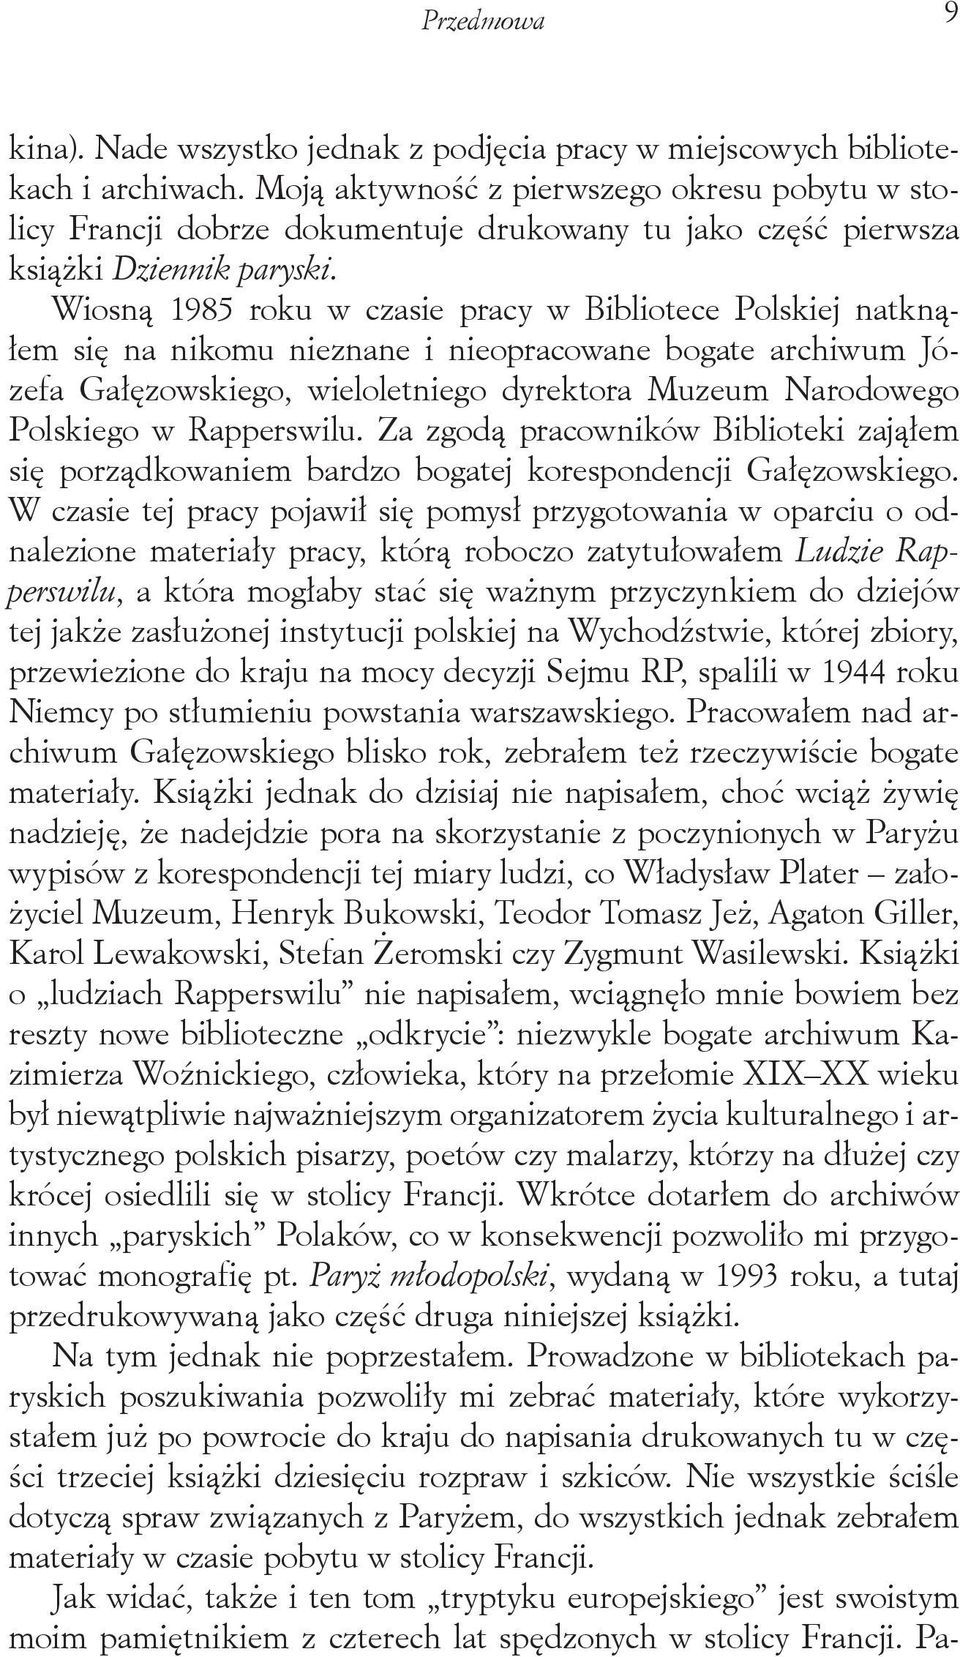 Wiosną 1985 roku w czasie pracy w Bibliotece Polskiej natknąłem się na nikomu nieznane i nieopracowane bogate archiwum Józefa Gałęzowskiego, wieloletniego dyrektora Muzeum Narodowego Polskiego w